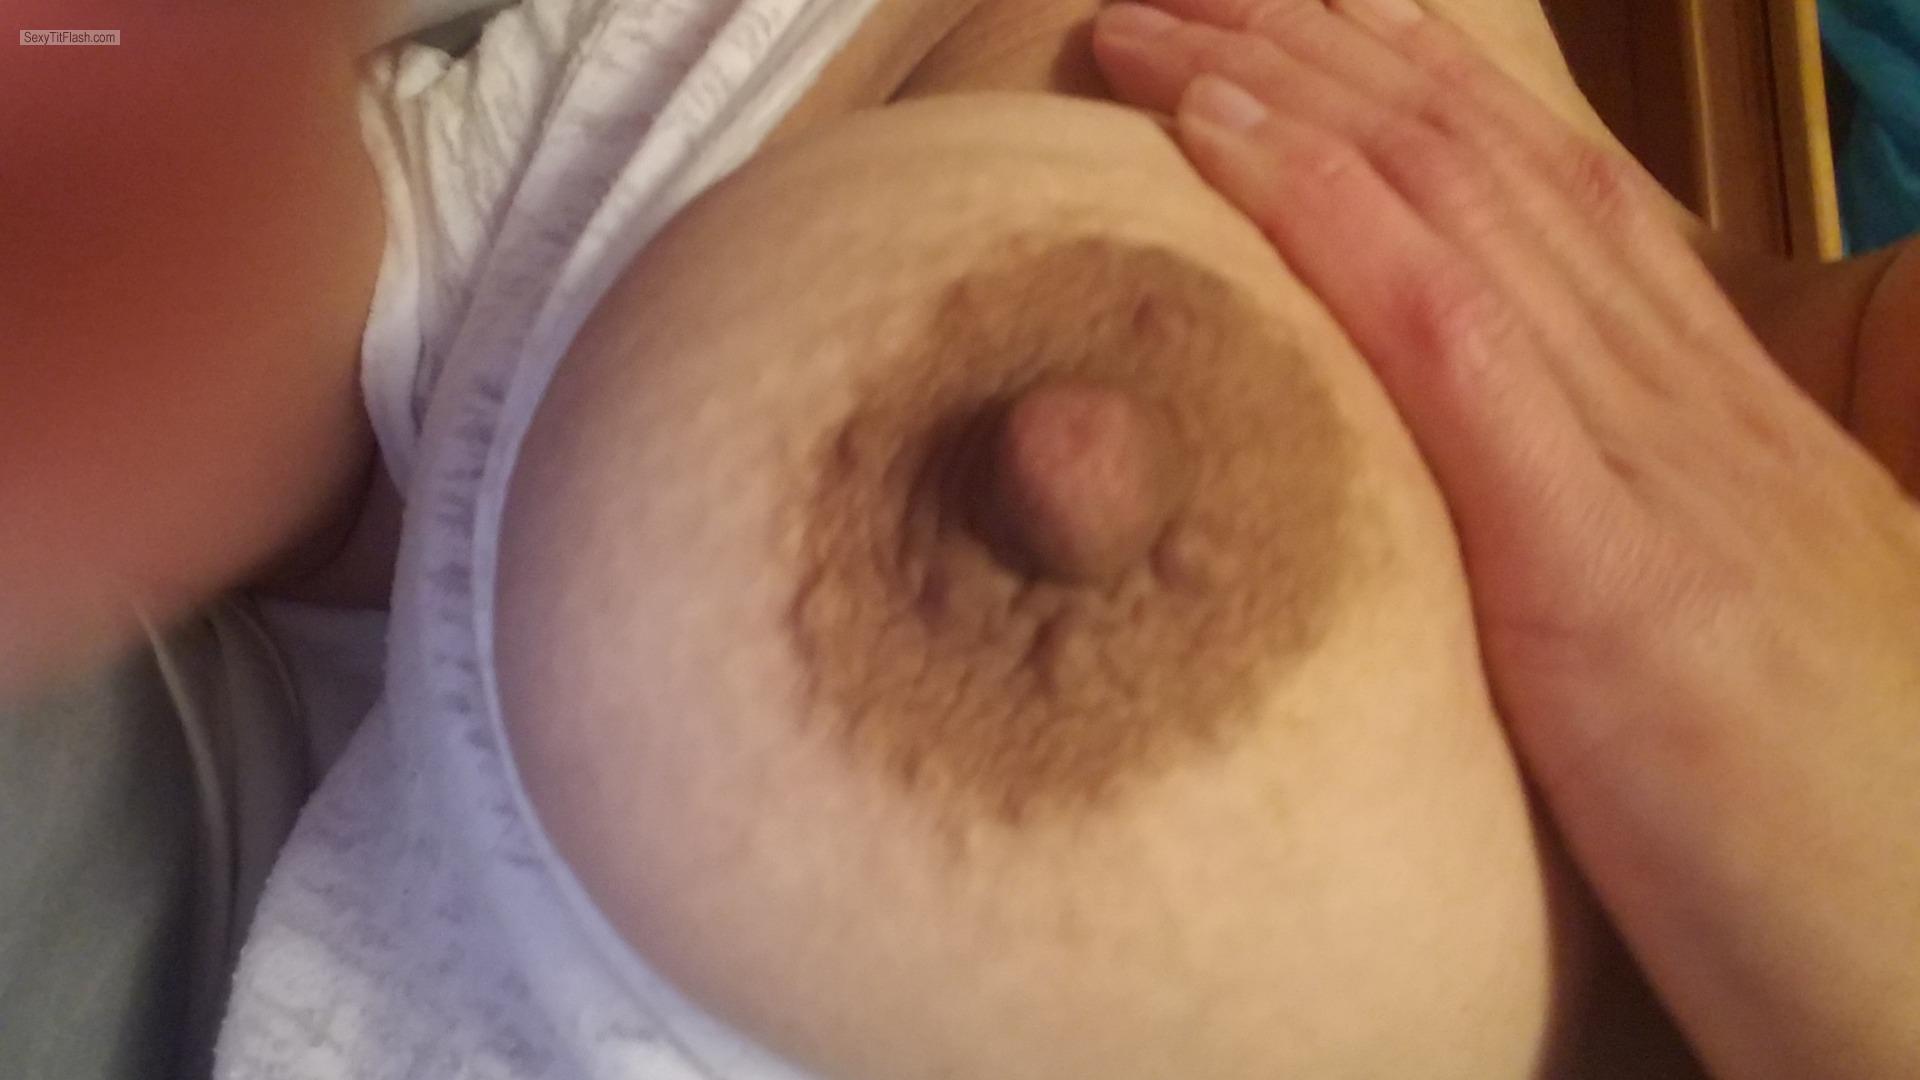 My Big Tits Selfie by Roxy1976